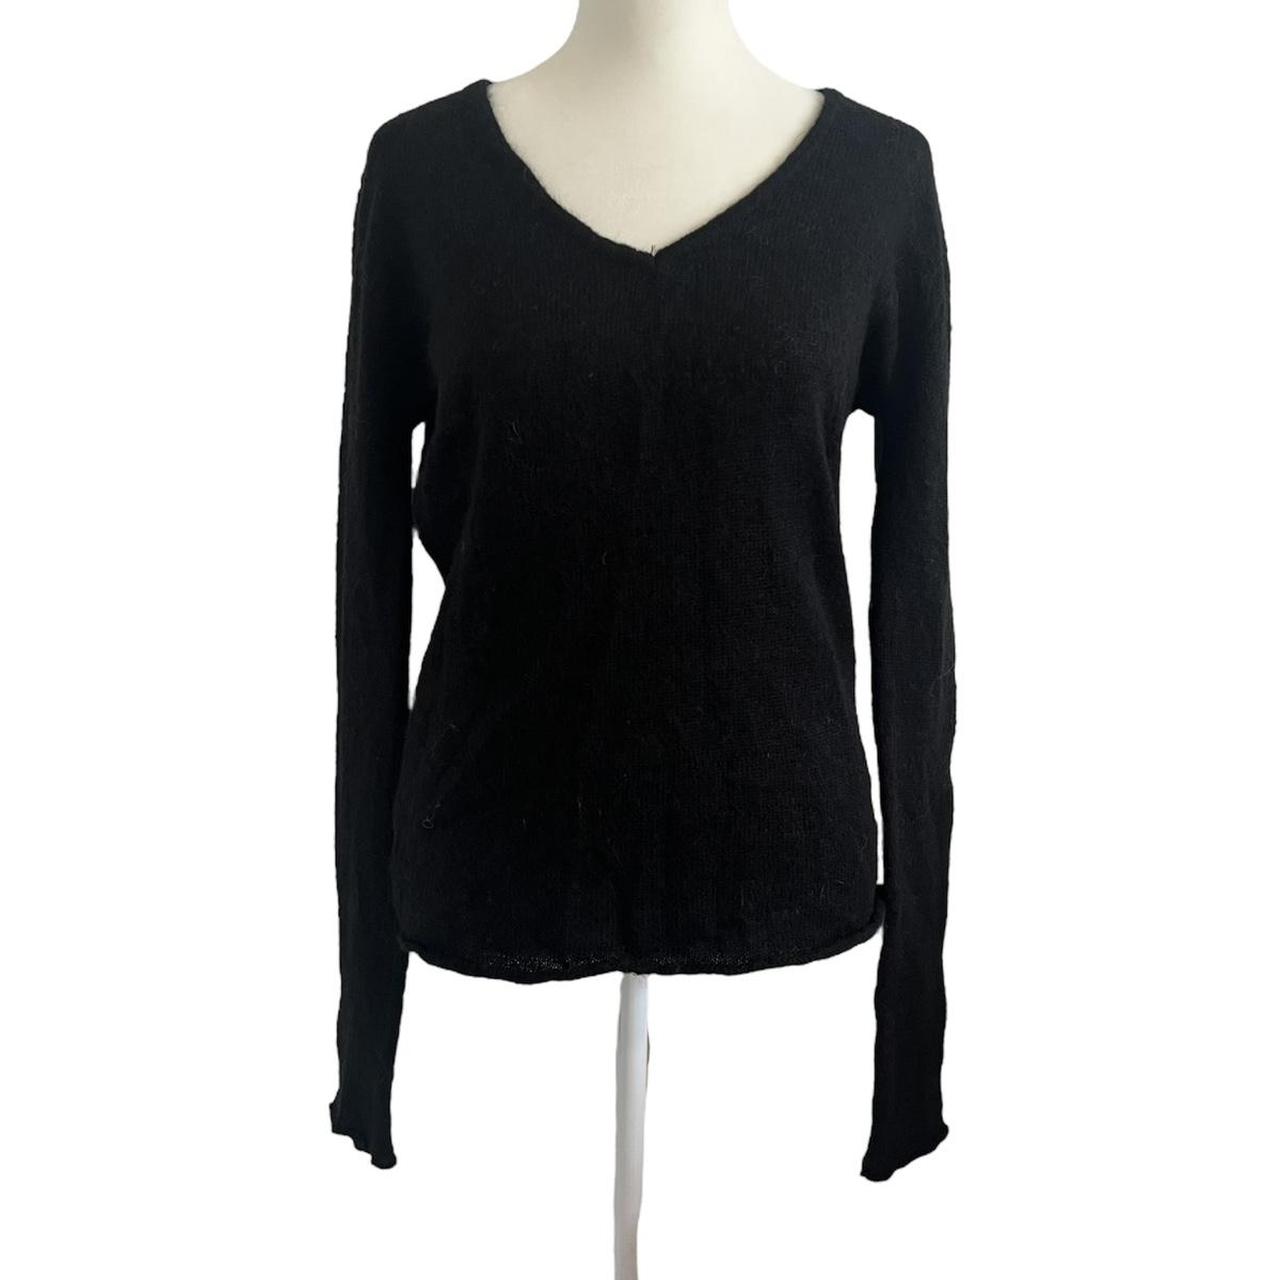 Brandy Melville Black Mohair V-Neck Sweater. One... - Depop